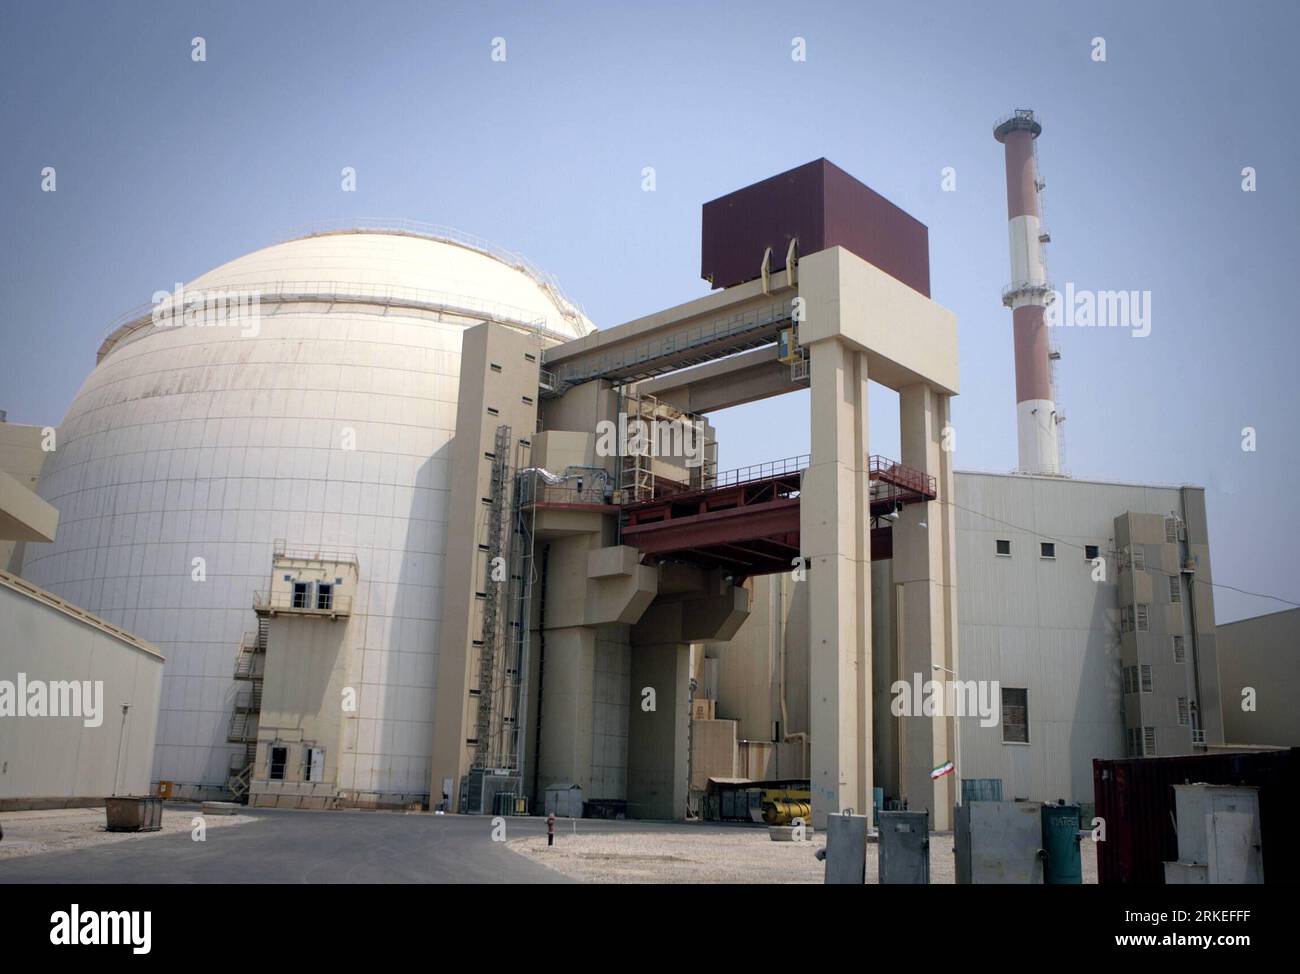 110409 -- TEHERAN, 9 aprile 2011 Xinhua -- foto scattata il 21 agosto 2010 mostra una vista della centrale nucleare di Bushehr nel sud dell'Iran. Il ministro degli Esteri iraniano Ali-Akbar Salehi ha confermato sabato che il combustibile viene ricaricato nella centrale nucleare di Bushehr, dicendo che il reattore della centrale raggiungerà la fase critica tra il 5 e il 10 maggio. Xinhua/Ahmad Halabisaz zw IRAN-BUSHEHR NUCLEAR POWER-FUEL RELOAD-FILE PUBLICATIONxNOTxINxCHN Foto Stock